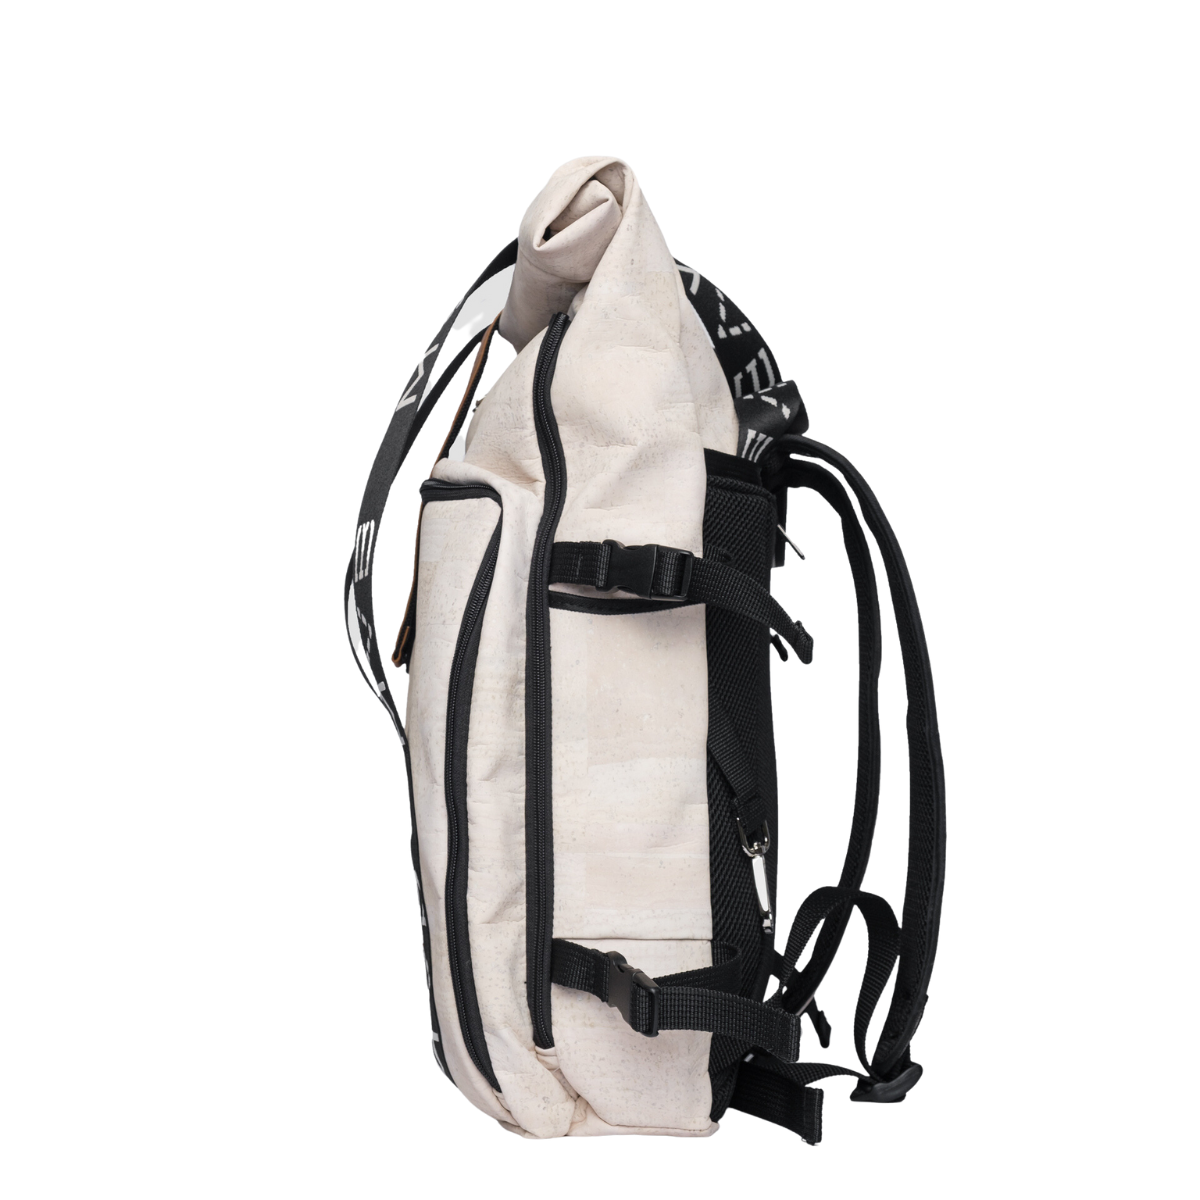 Xplorer vegan backpack for travel